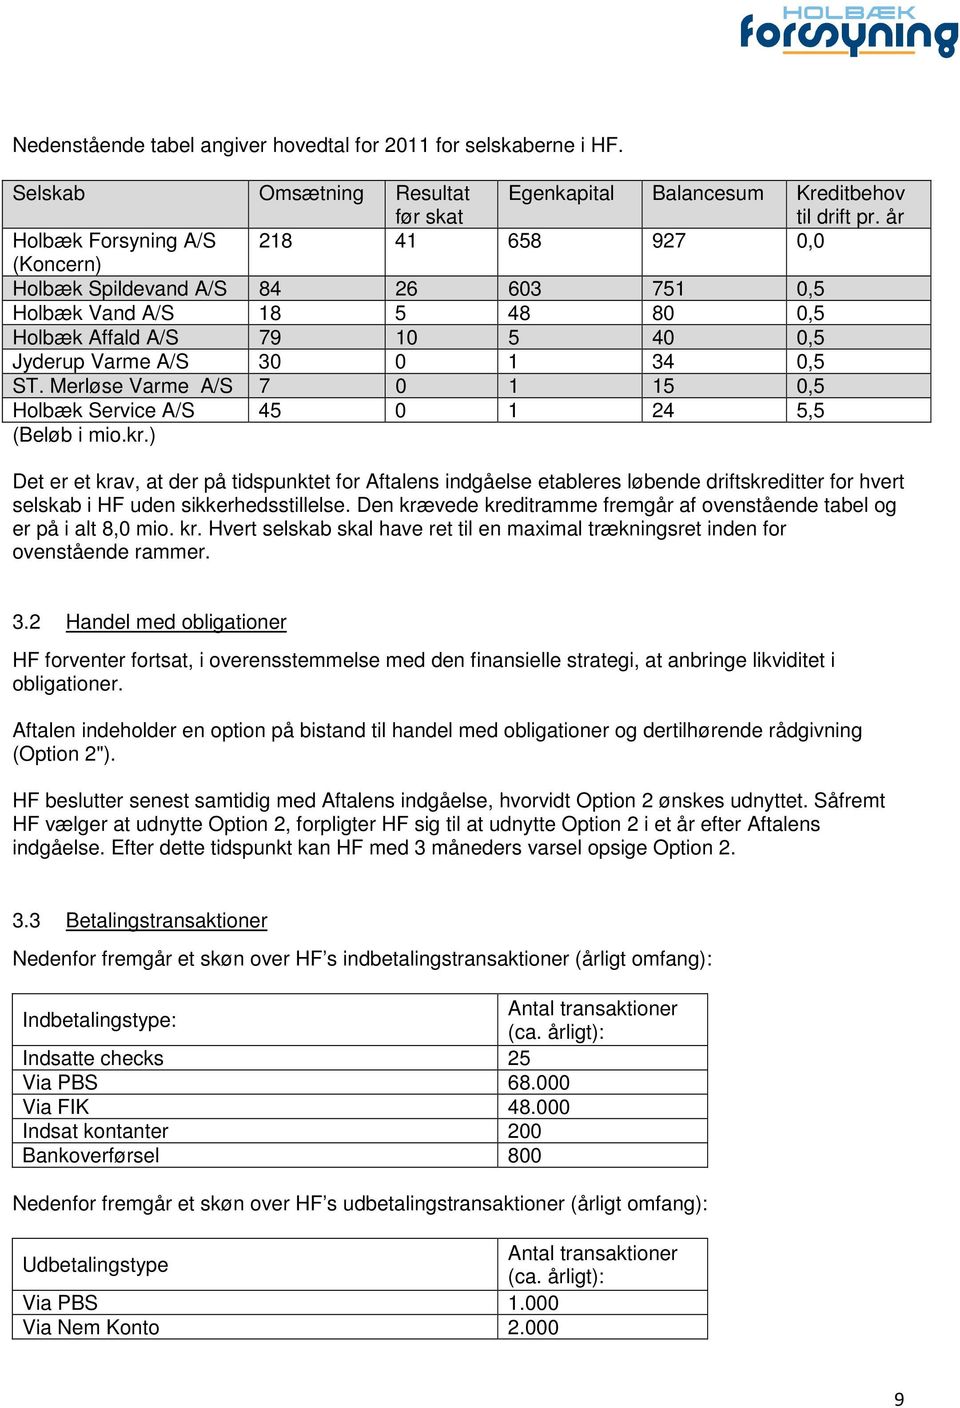 Merløse Varme A/S 7 0 1 15 0,5 Holbæk Service A/S 45 0 1 24 5,5 (Beløb i mio.kr.